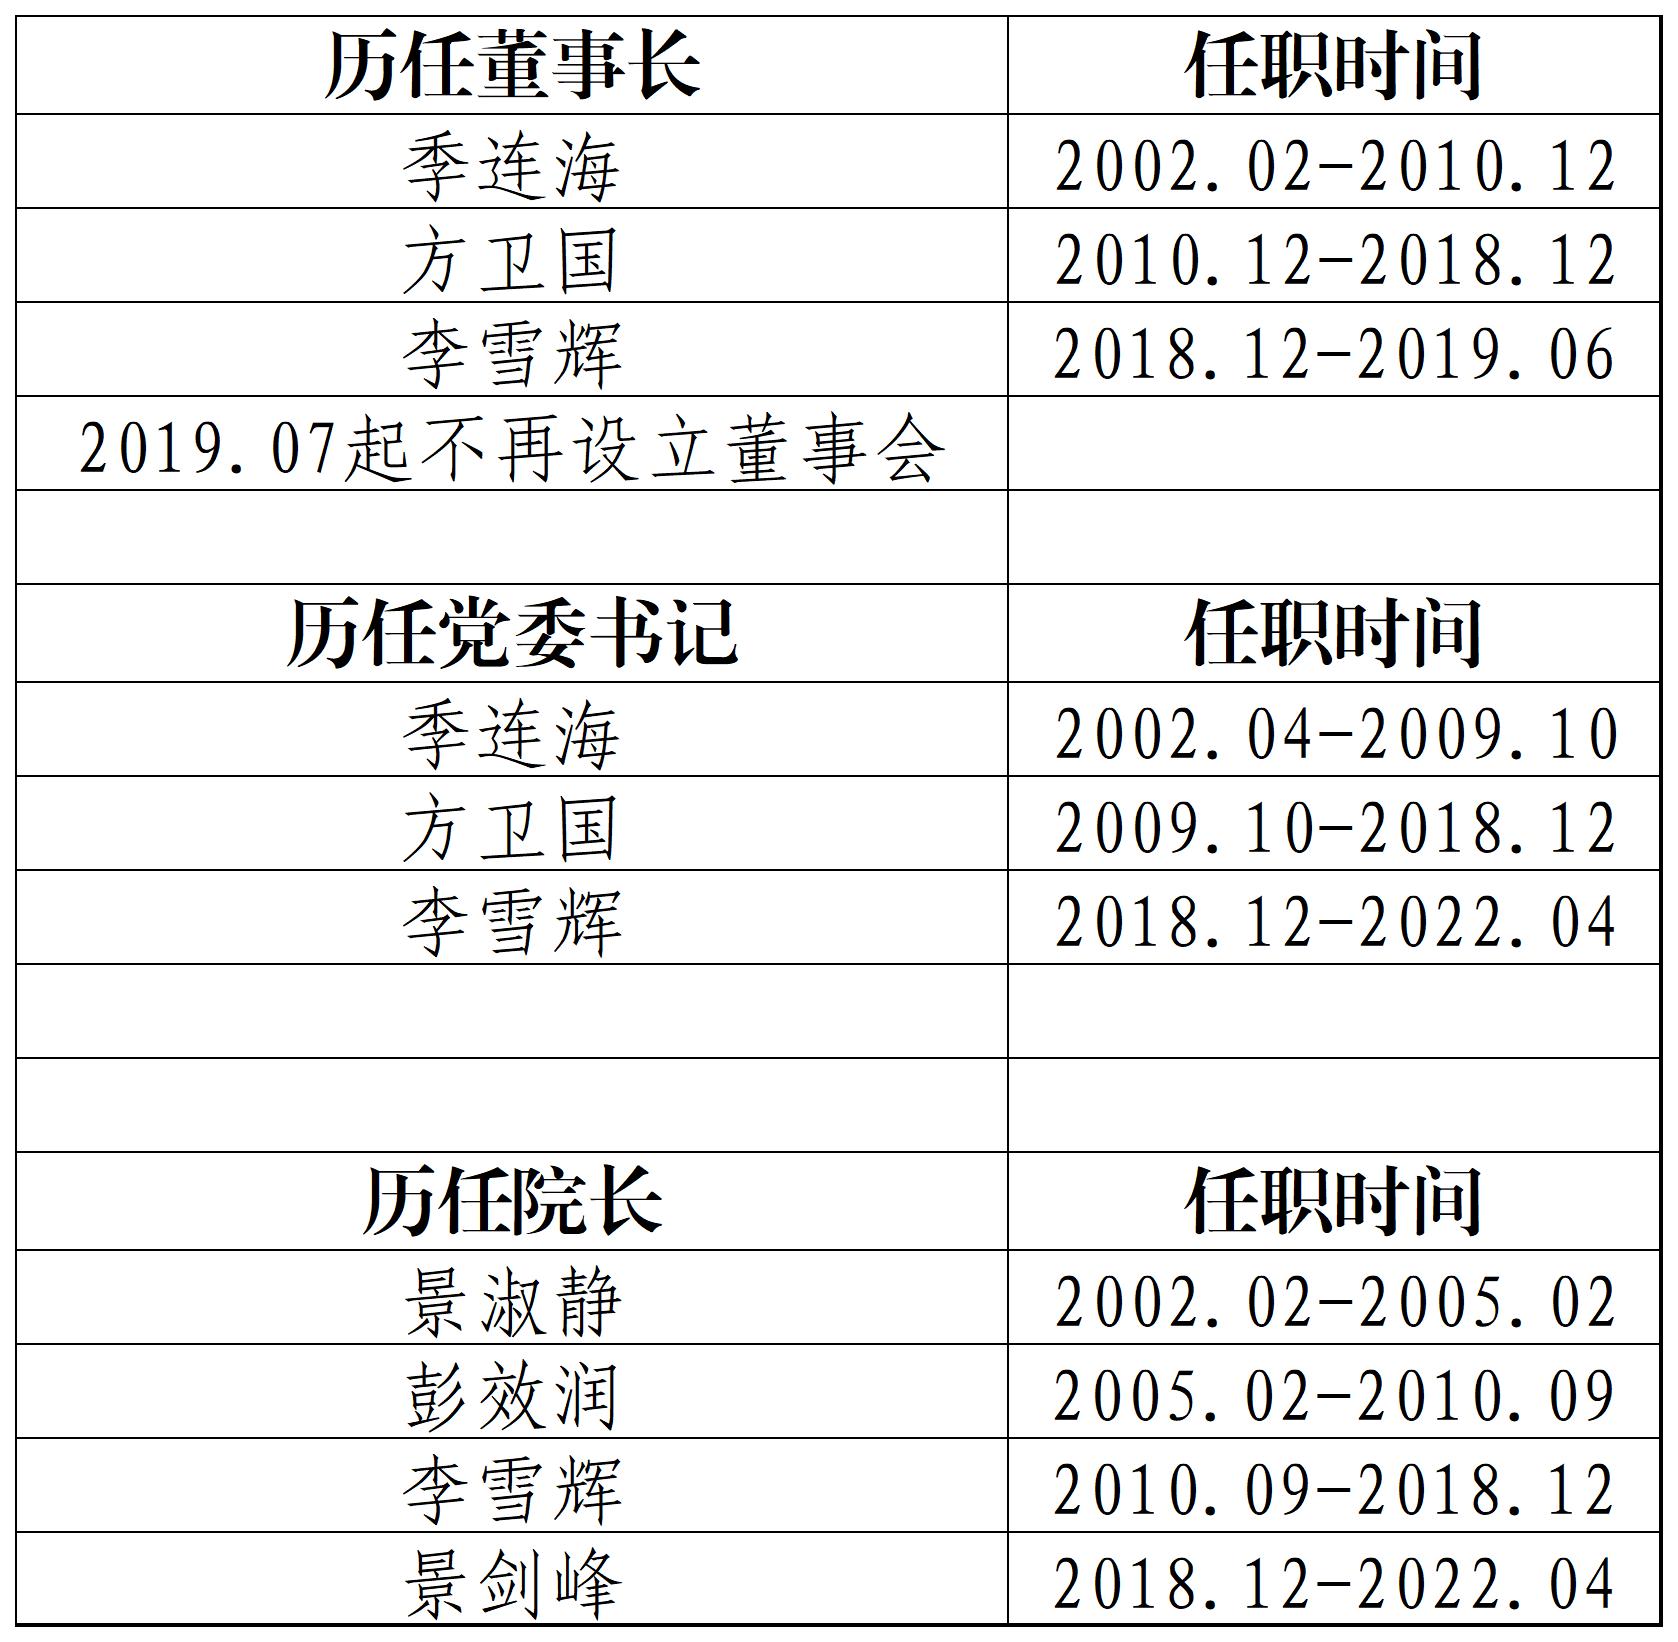 【冯院长修改】2002年以来学院领导班子成员变动情况2022.07.04(1).jpg